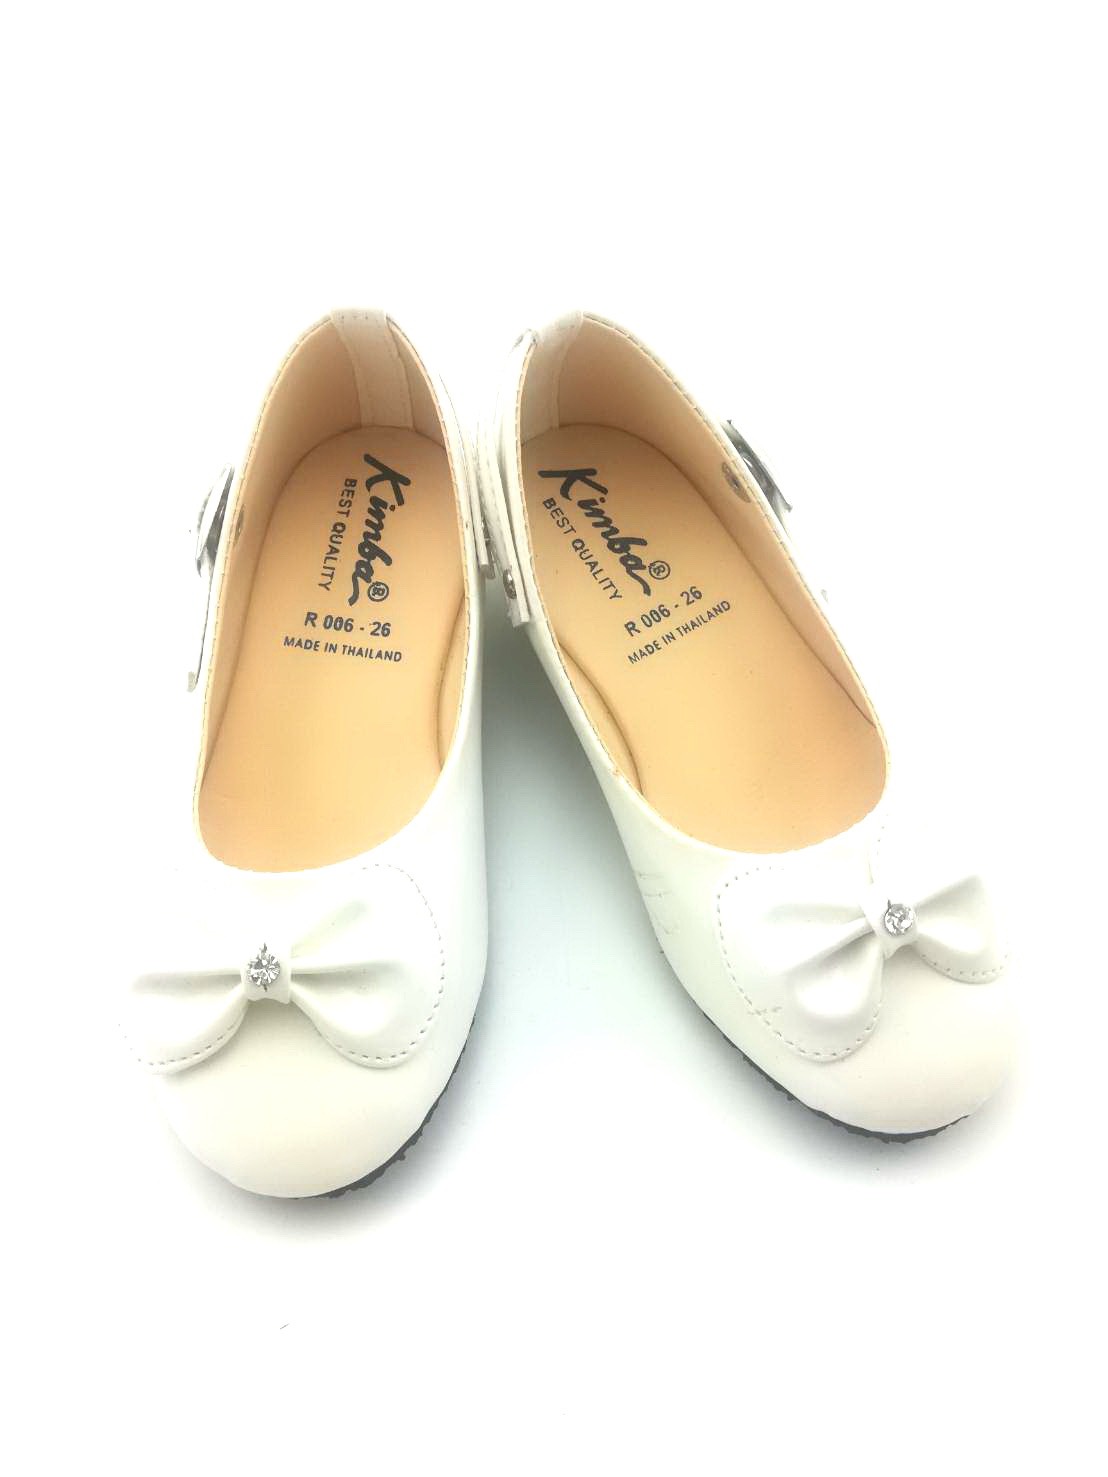 KIMBA R006 รองเท้าส้นเตี้ยเด็กผู้หญิง  (ไซส์25-36) *สี ดำ,ขาว,ชมพู